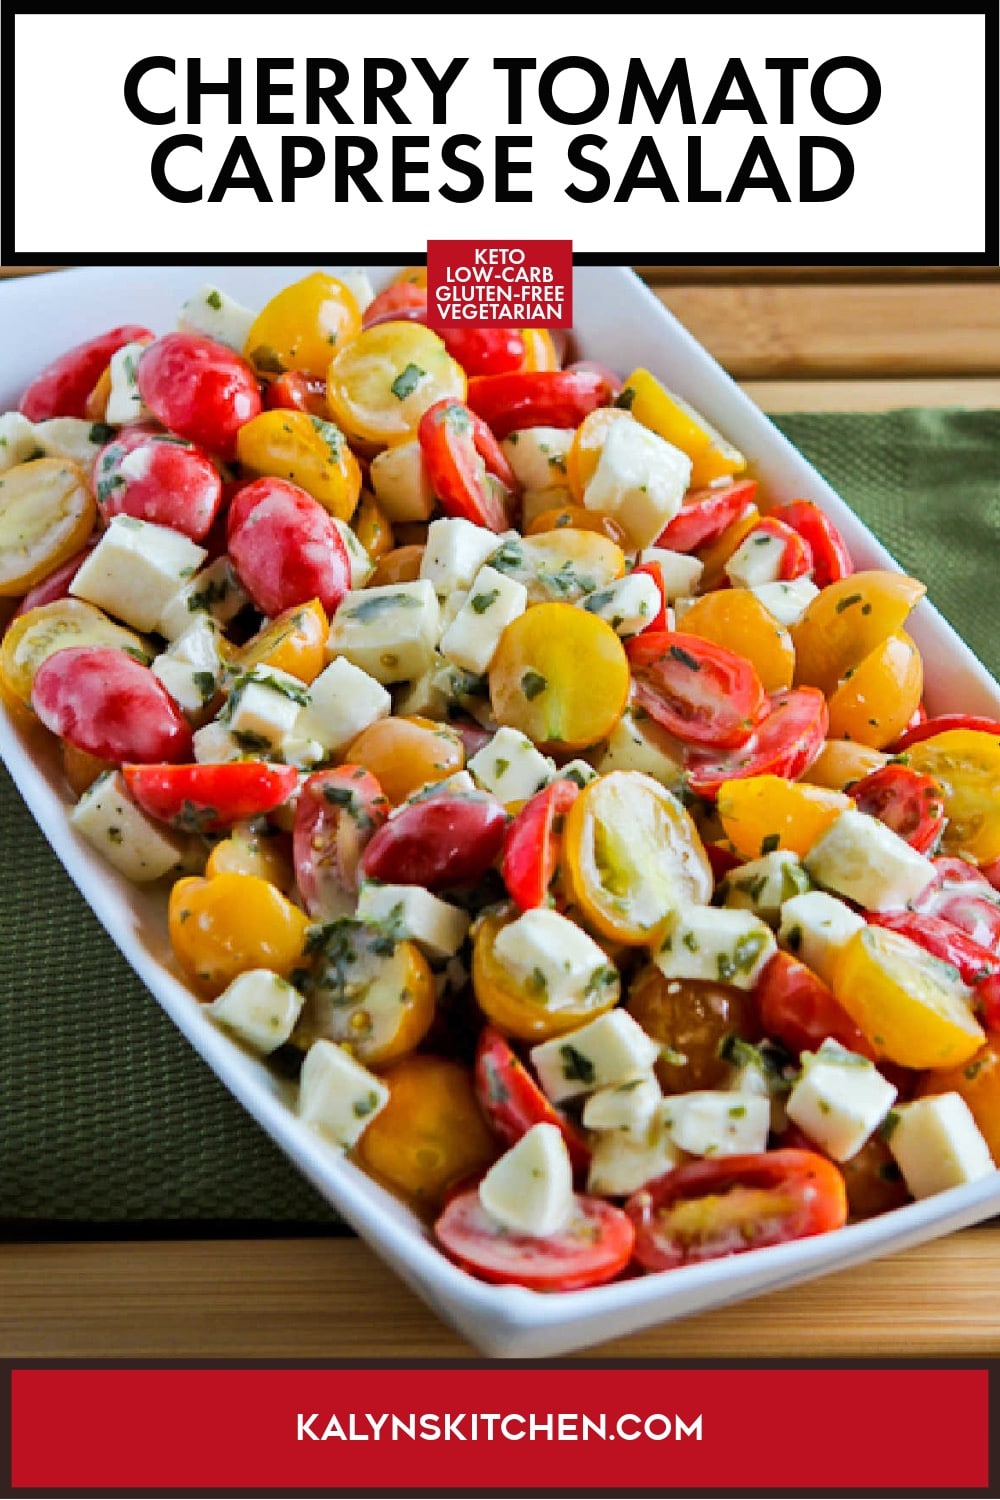 Pinterest image of Cherry Tomato Caprese Salad